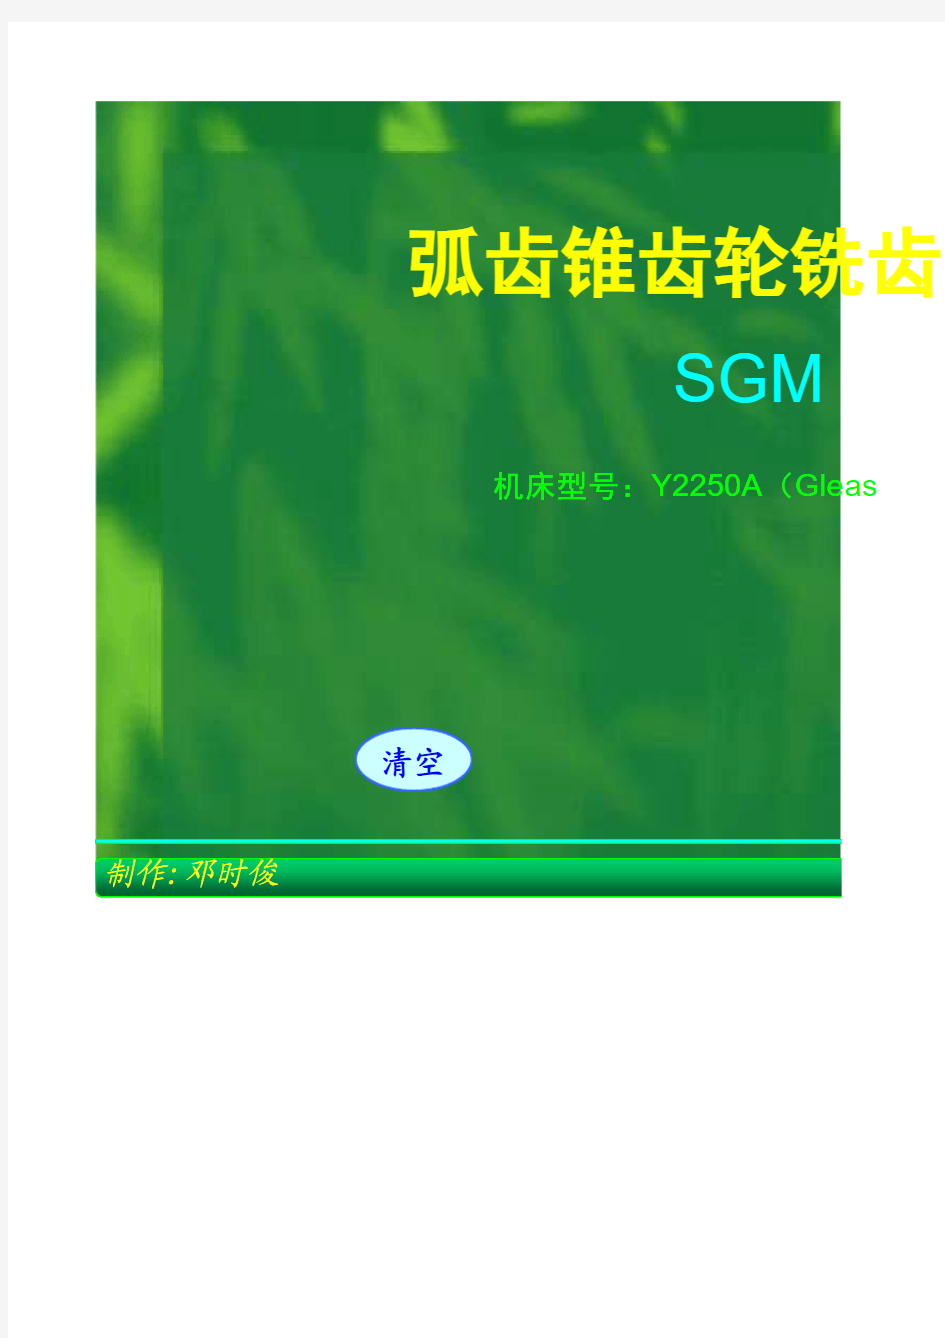 弧齿锥齿轮SGM法铣齿计算